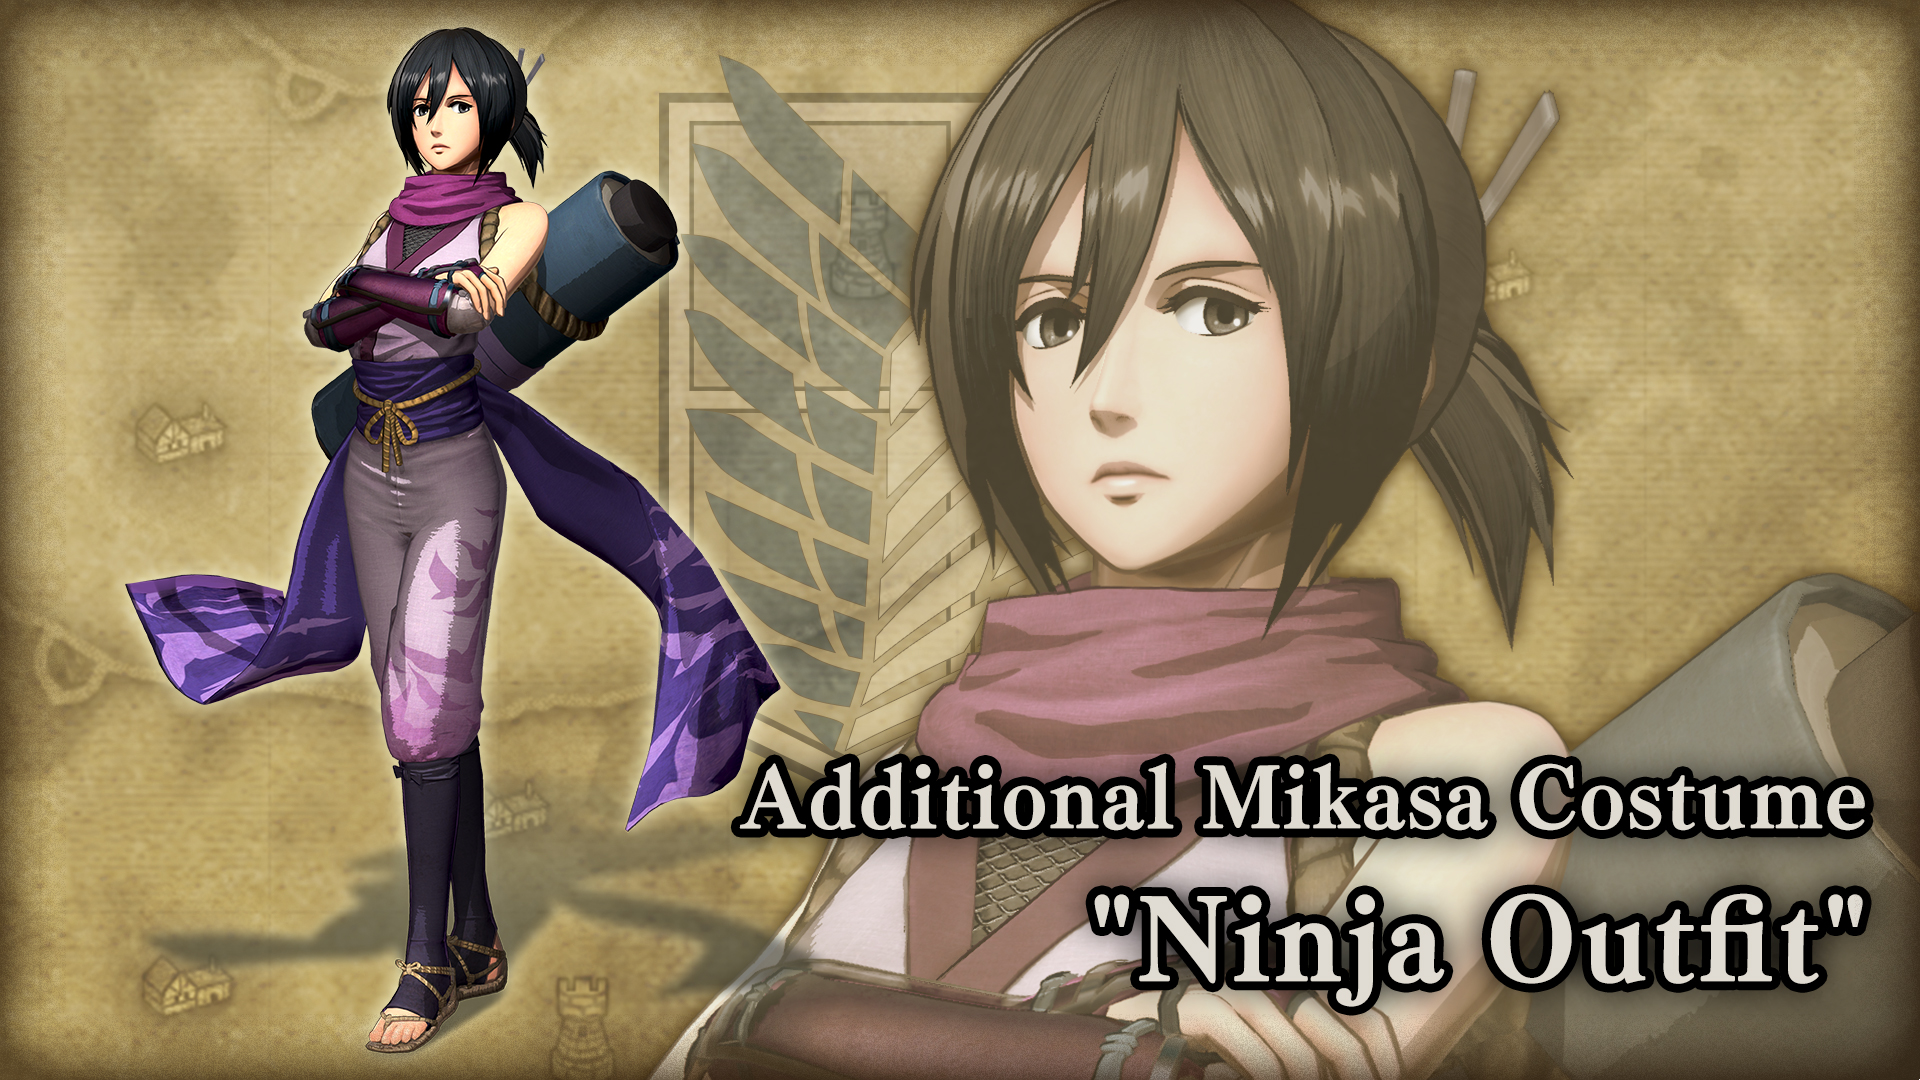 Additional Mikasa Costume: "Ninja Outfit"